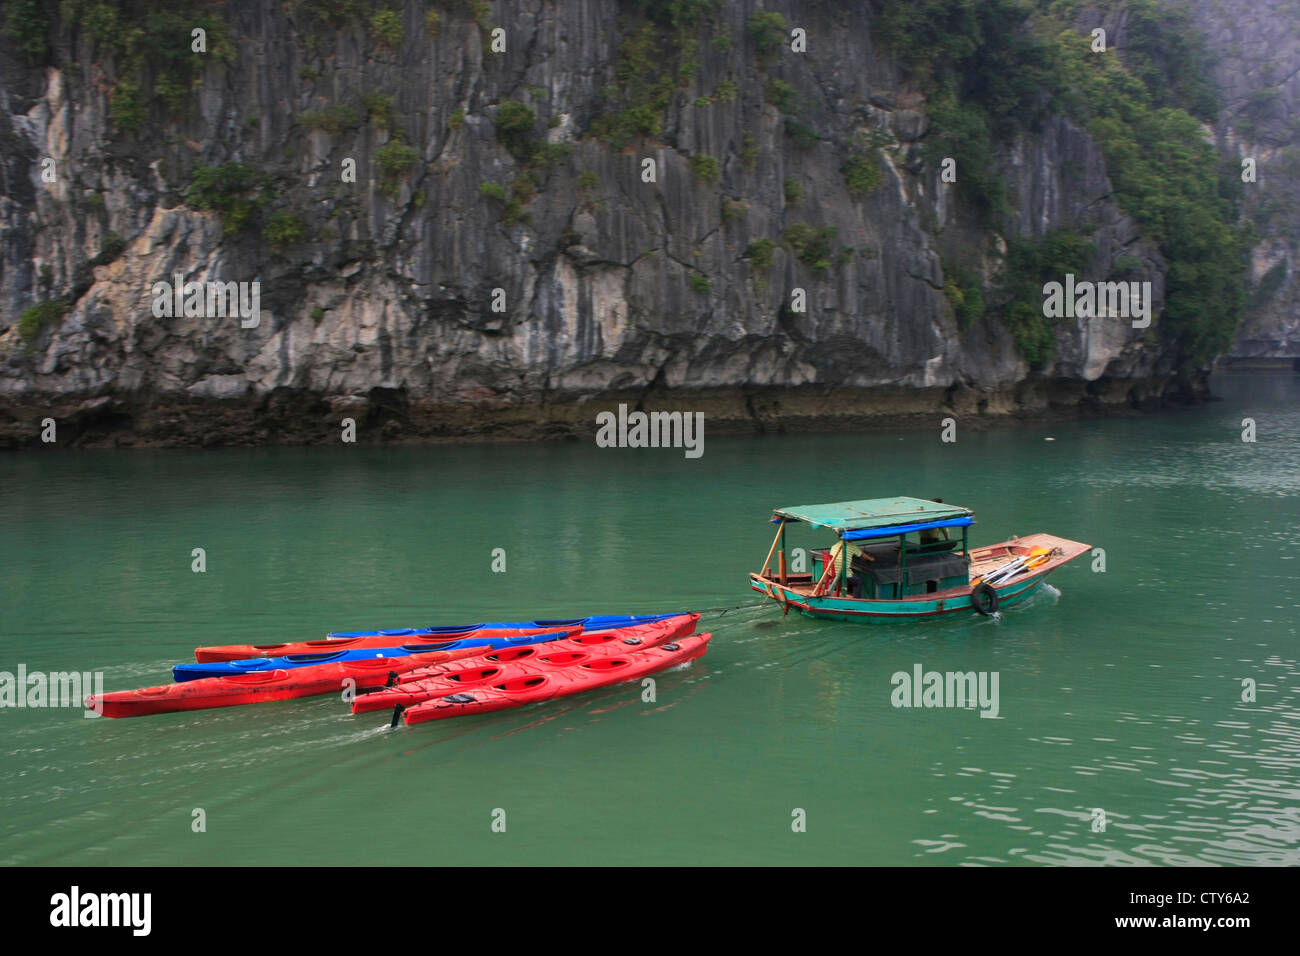 Small boat towing colorful kayaks, Halong Bay, Vietnam Stock Photo